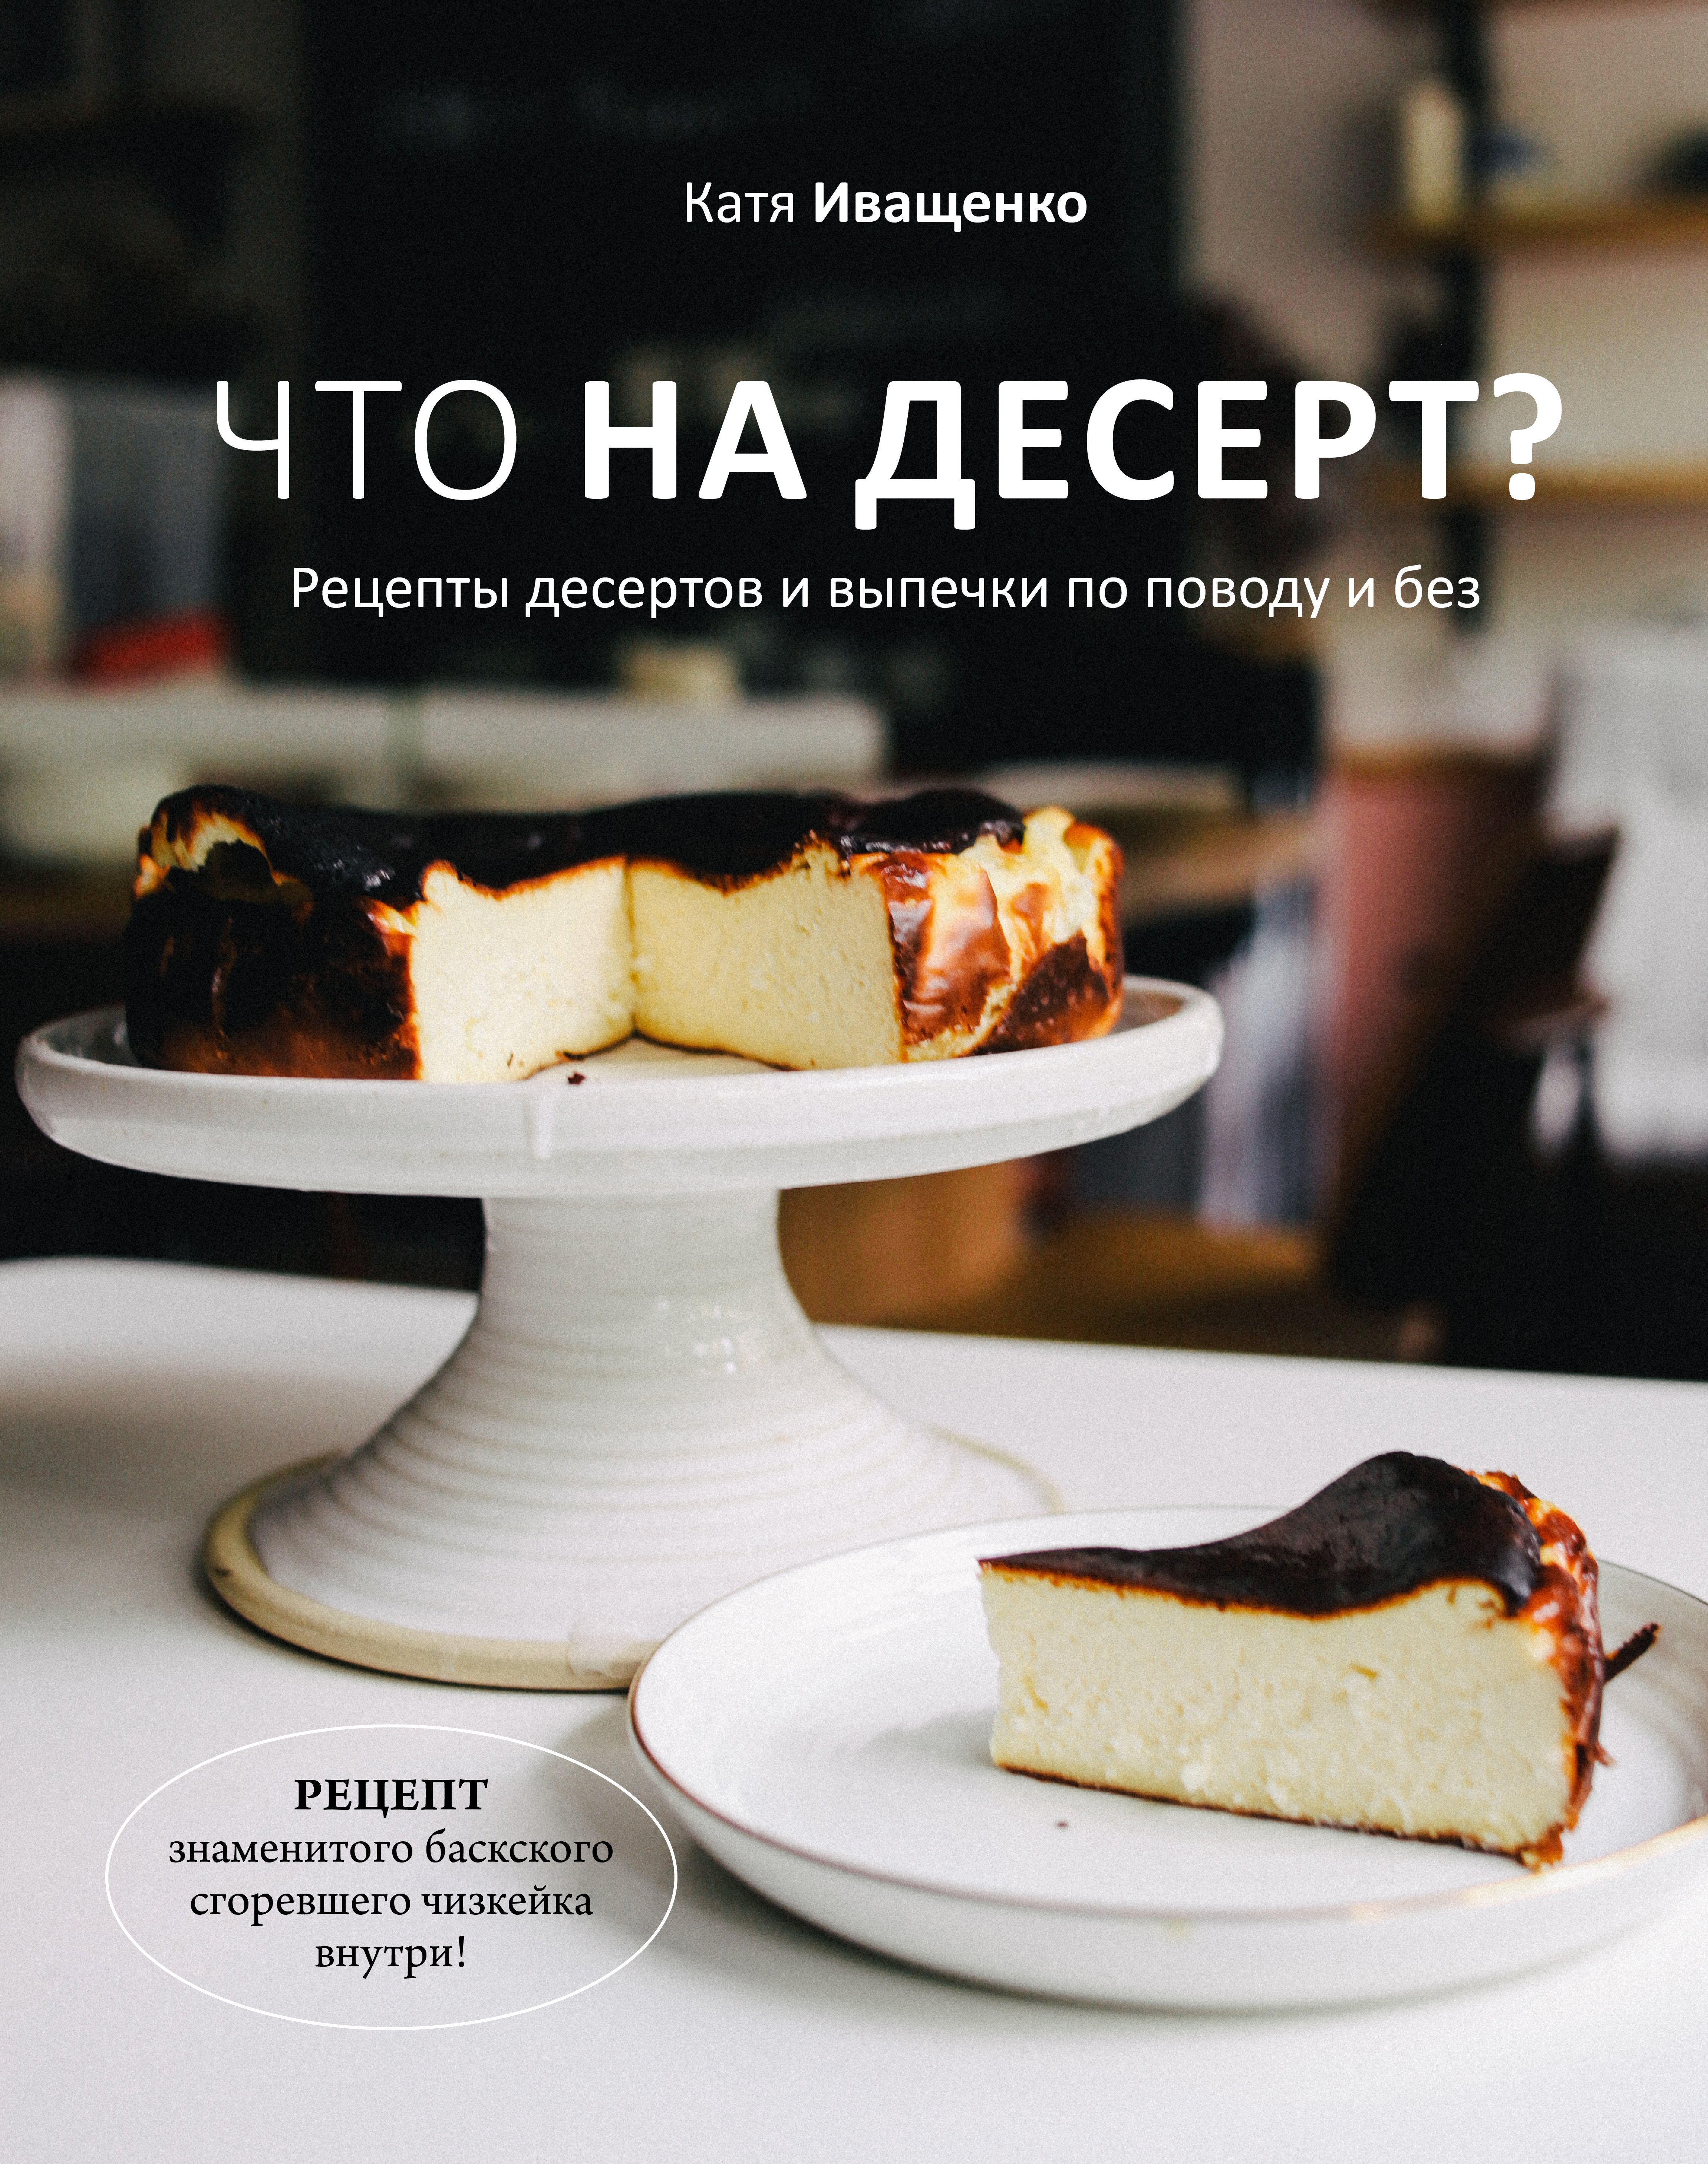 Иващенко Катя - Что на десерт? Рецепты десертов и выпечки по поводу и без (с автографом)